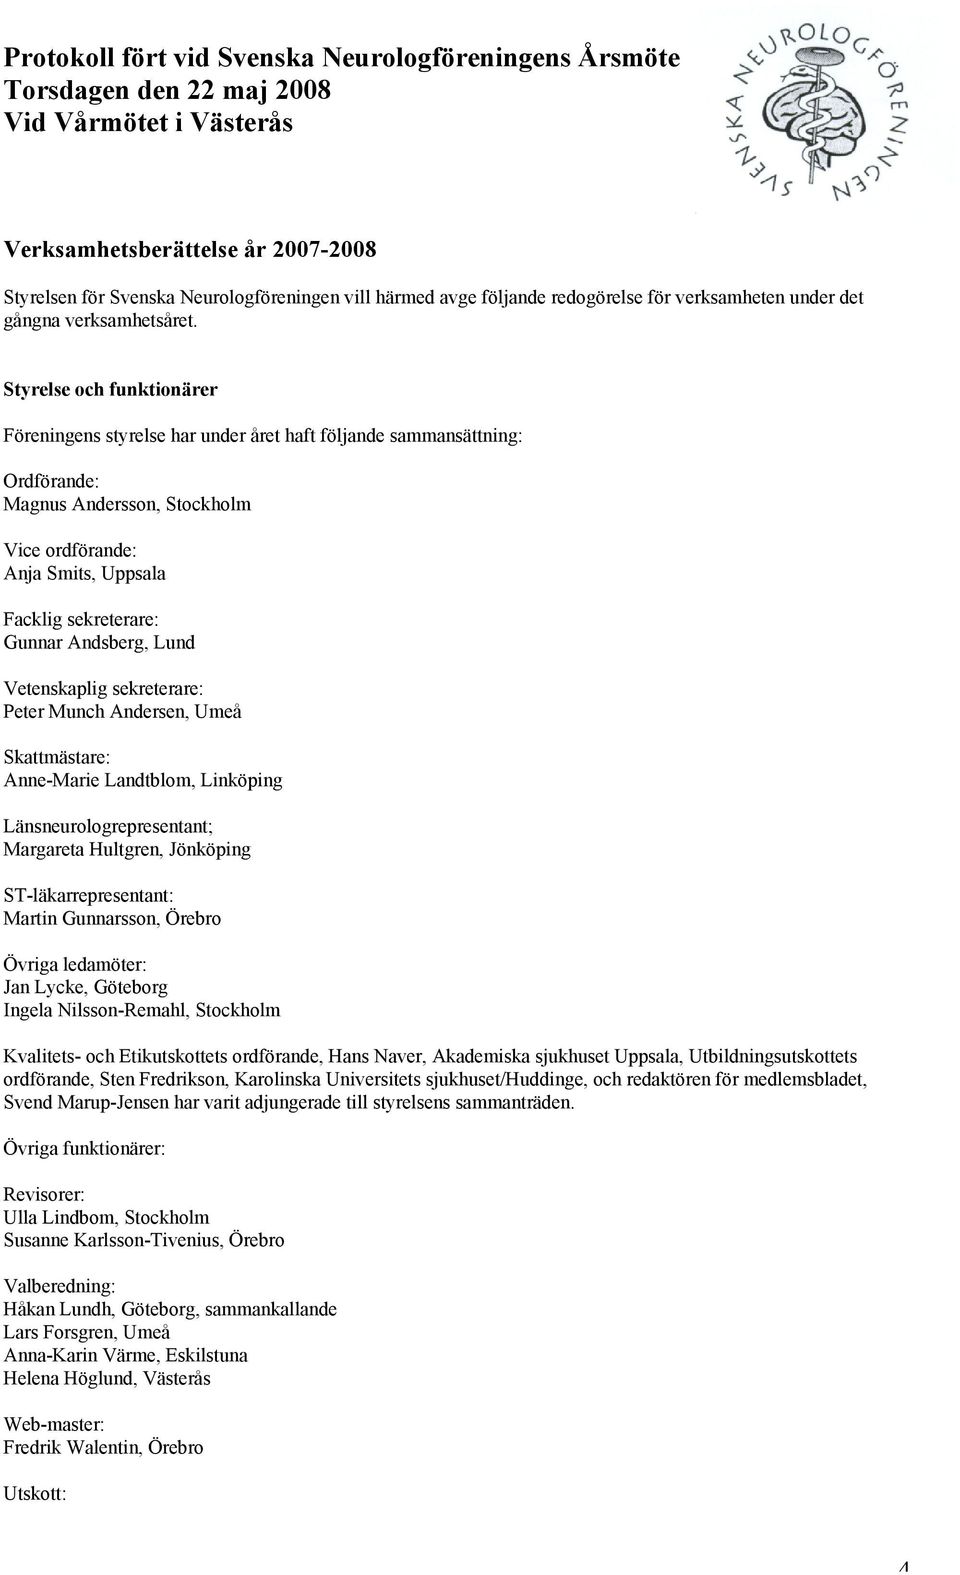 Andsberg, Lund Vetenskaplig sekreterare: Peter Munch Andersen, Umeå Skattmästare: Anne-Marie Landtblom, Linköping Länsneurologrepresentant; Margareta Hultgren, Jönköping ST-läkarrepresentant: Martin